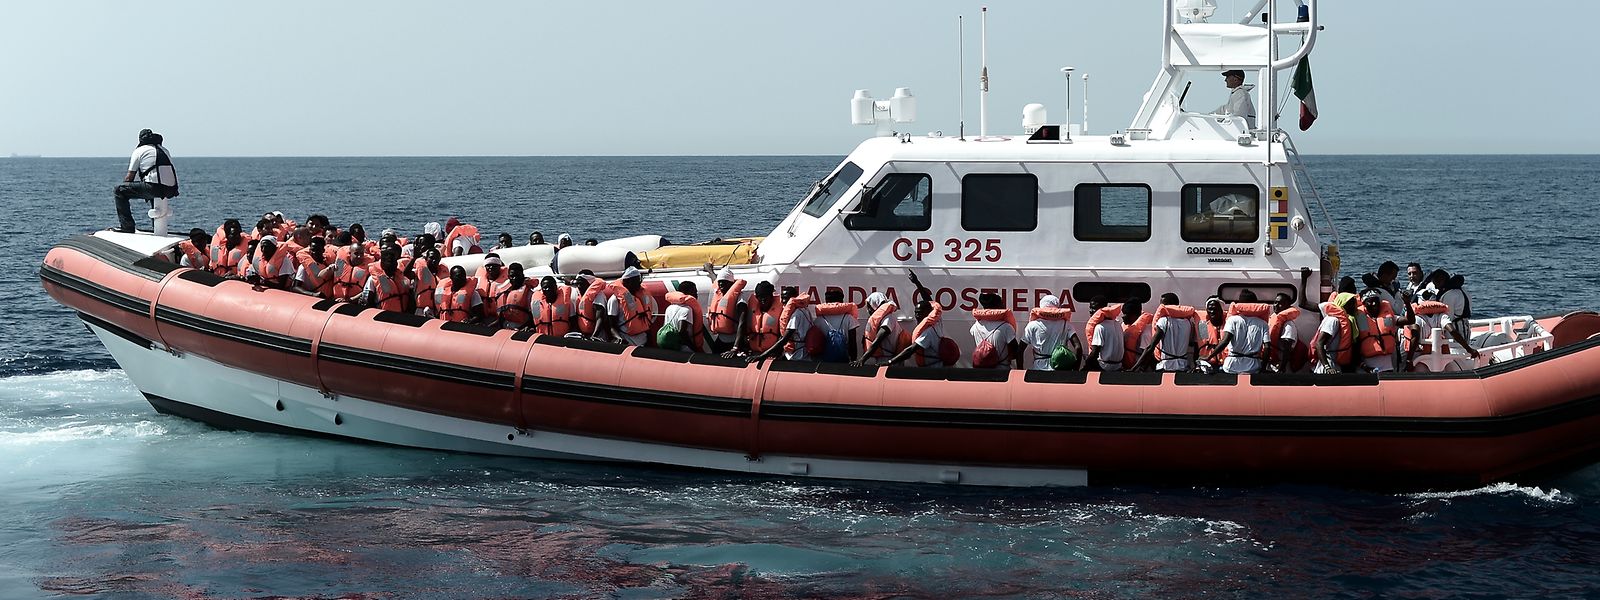 Flüchtlinge, die auf einem Boot der Küstenwache aufgenommen wurden, befinden sich nun auf dem Weg nach Spanien.  